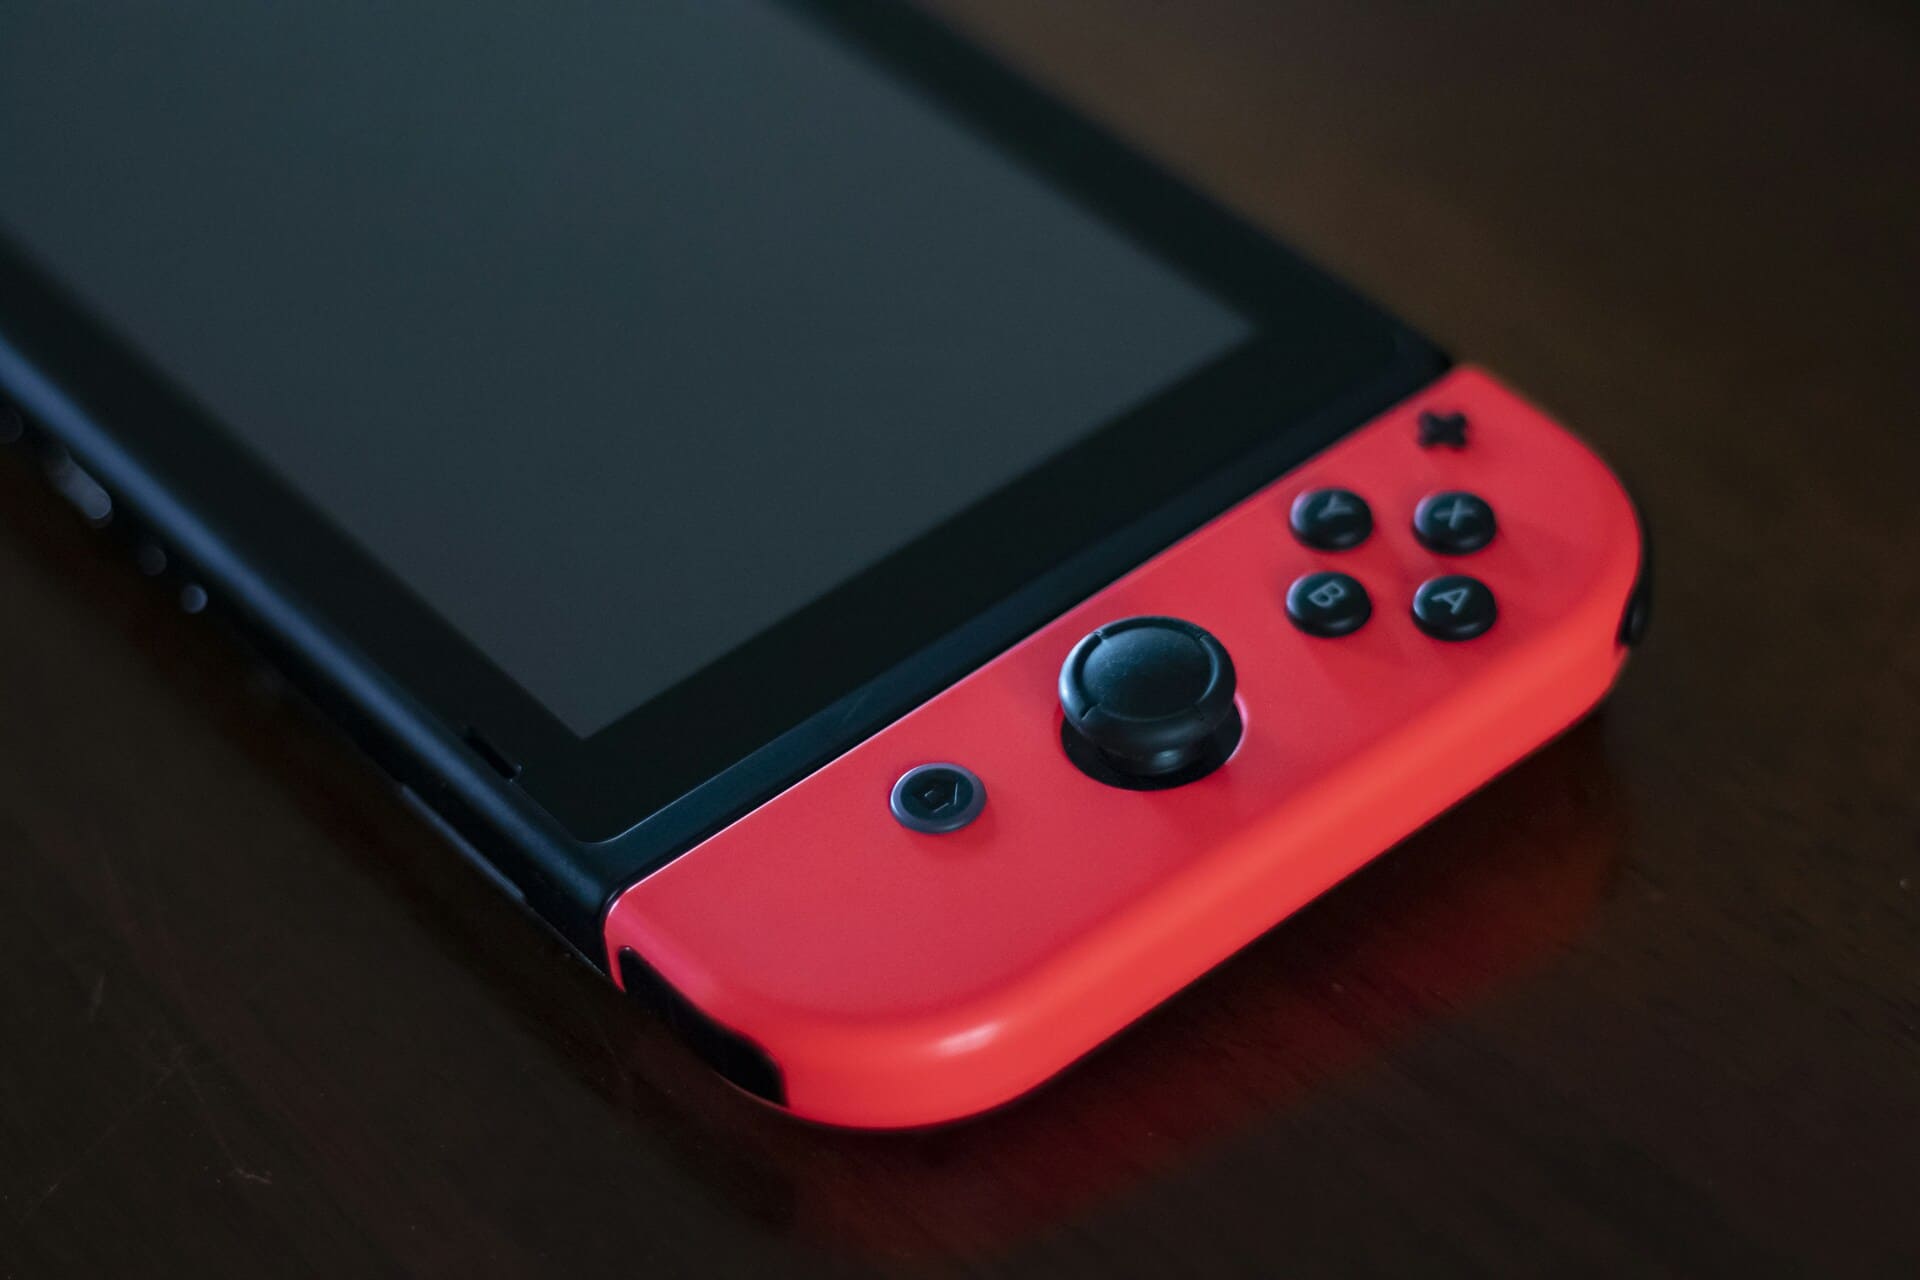 Unterseite der Nintendo Switch Die rote Joy-Con ist deutlich zu sehen